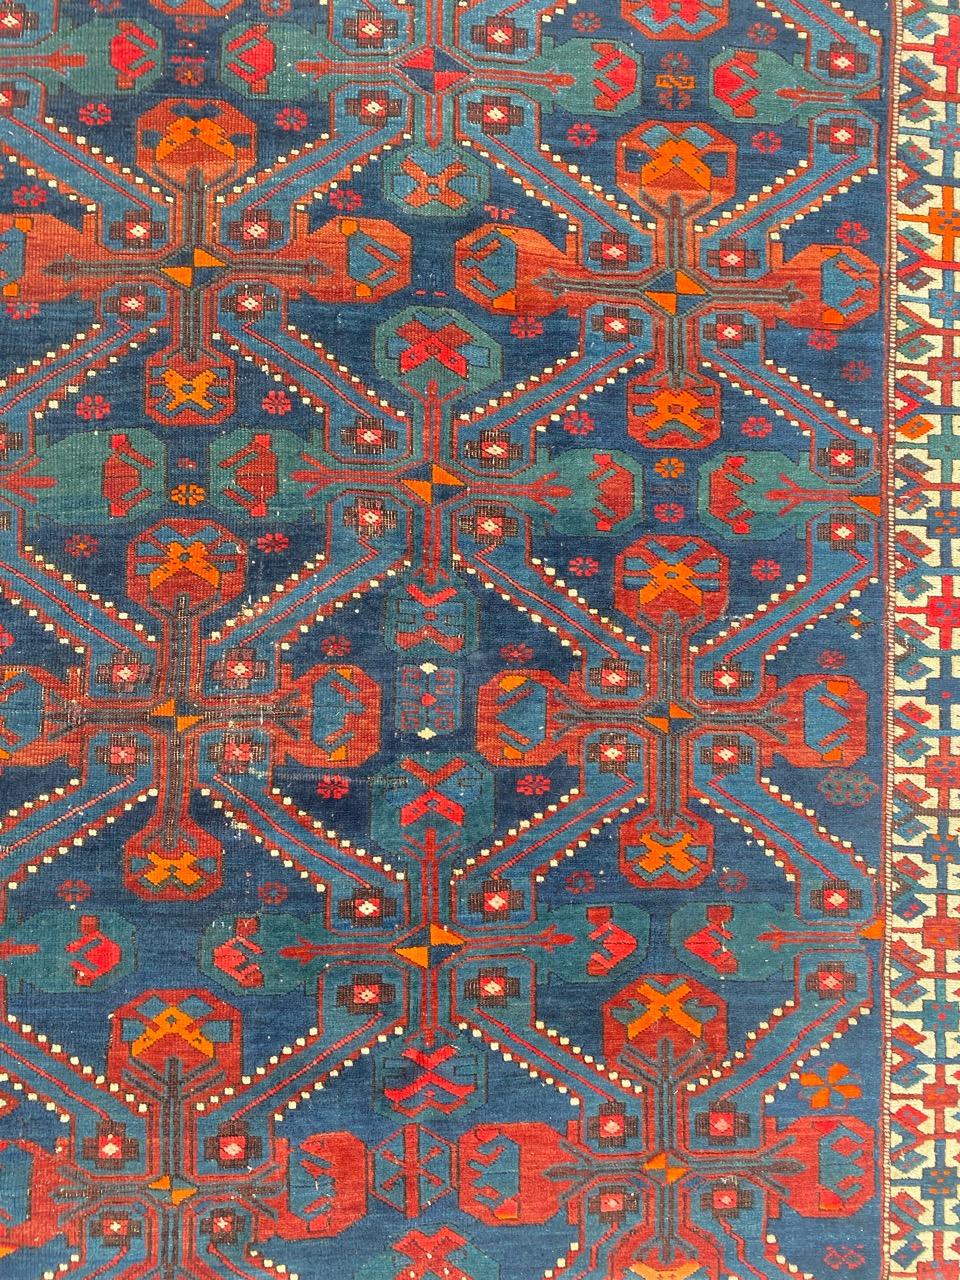 Schöner antiker Shirwan-Kouba-Teppich mit schönem geometrischem Muster und schönen natürlichen Farben, komplett handgeknüpft mit Wollsamt auf Wollfond.

✨✨✨
